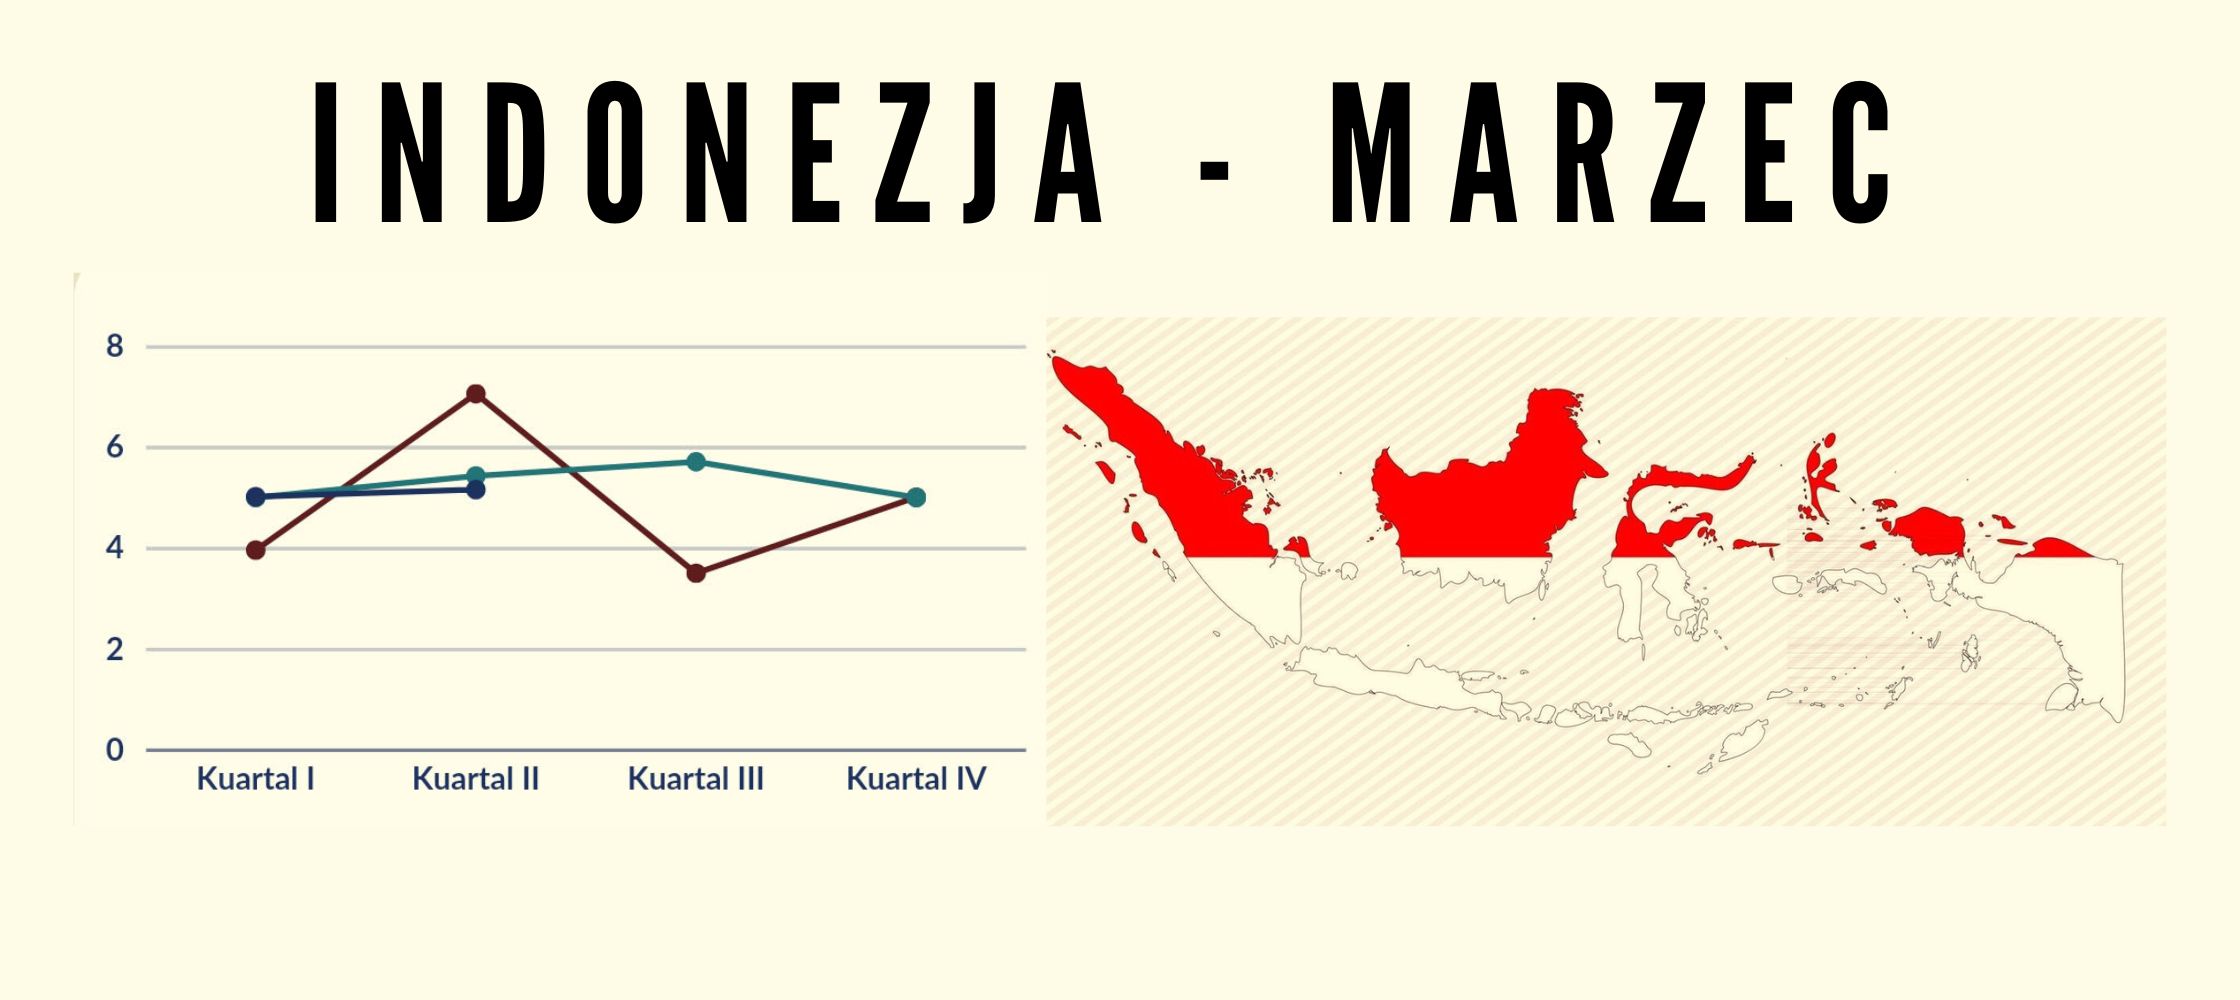 Marzec na archipelagu, czyli … co wydarzyło się w Indonezji w poprzednim miesiącu?